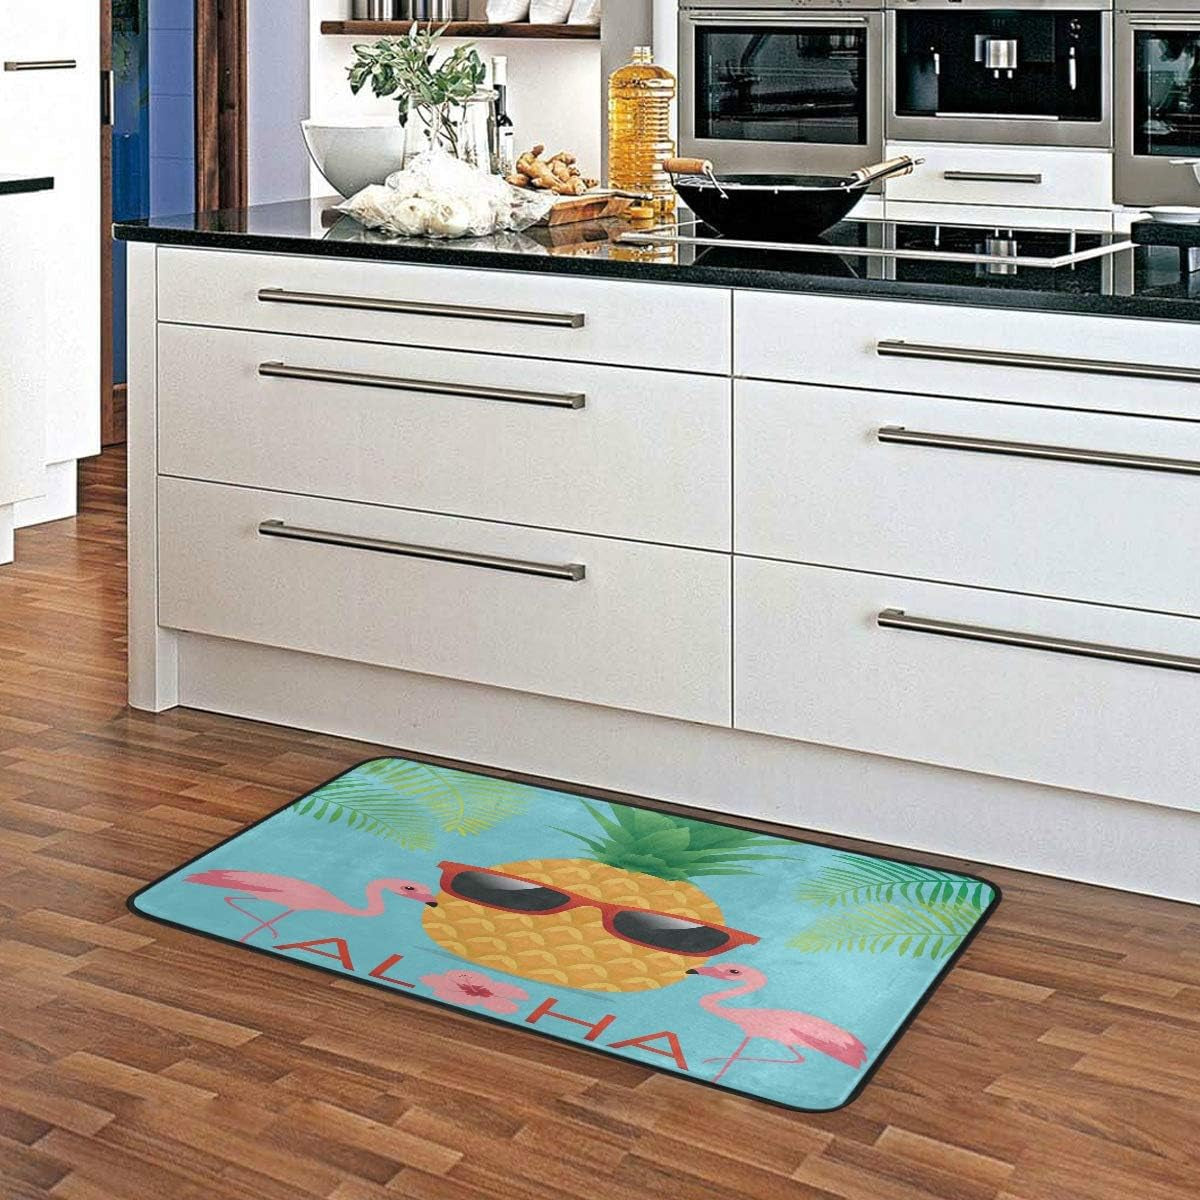 Doormat Area Rug Mat Pineapple Flamingos for Bedroom Front Door Kitchen Indoors Home Decors